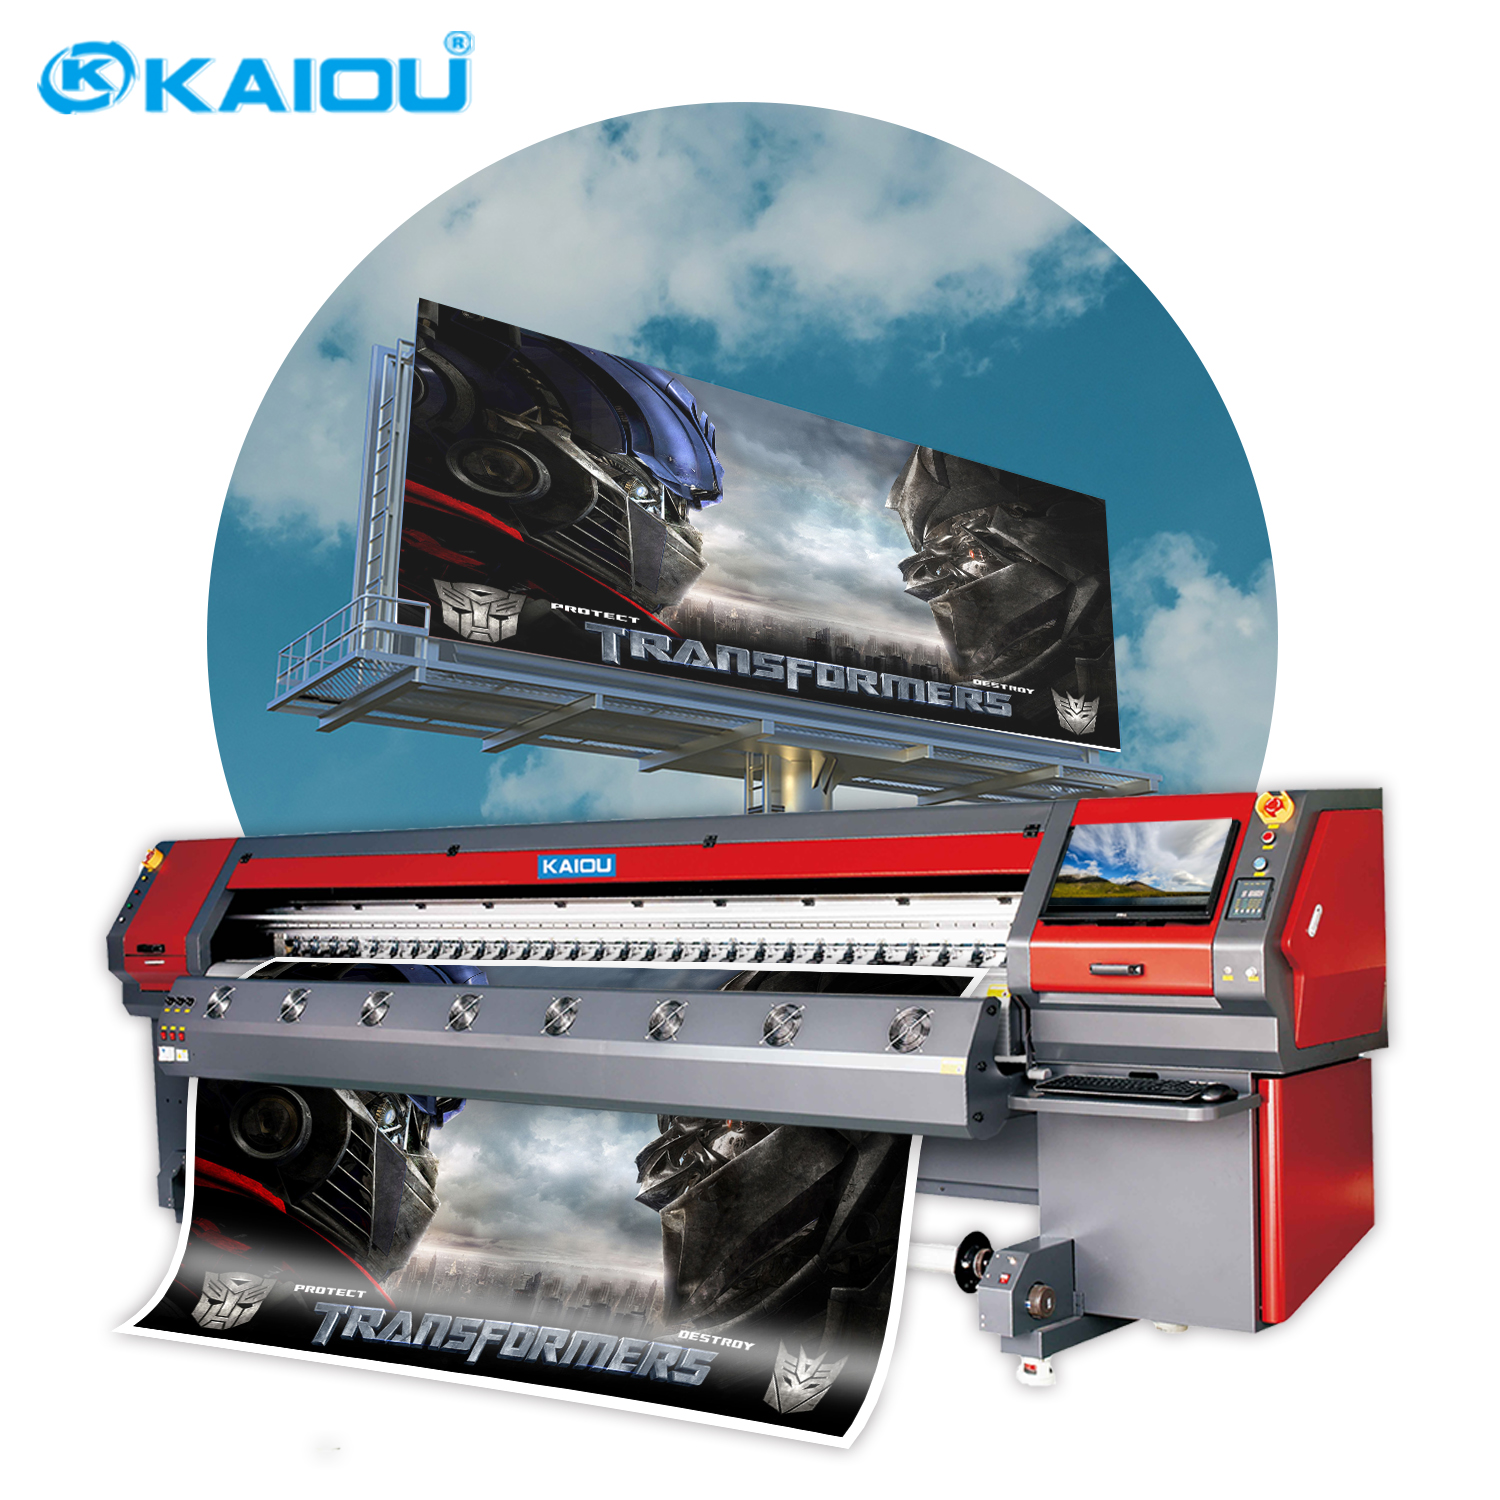 Impresora solvente de plataforma de gran tamaño KAIOU, impresora exterior de 3,2 m de ancho de impresión